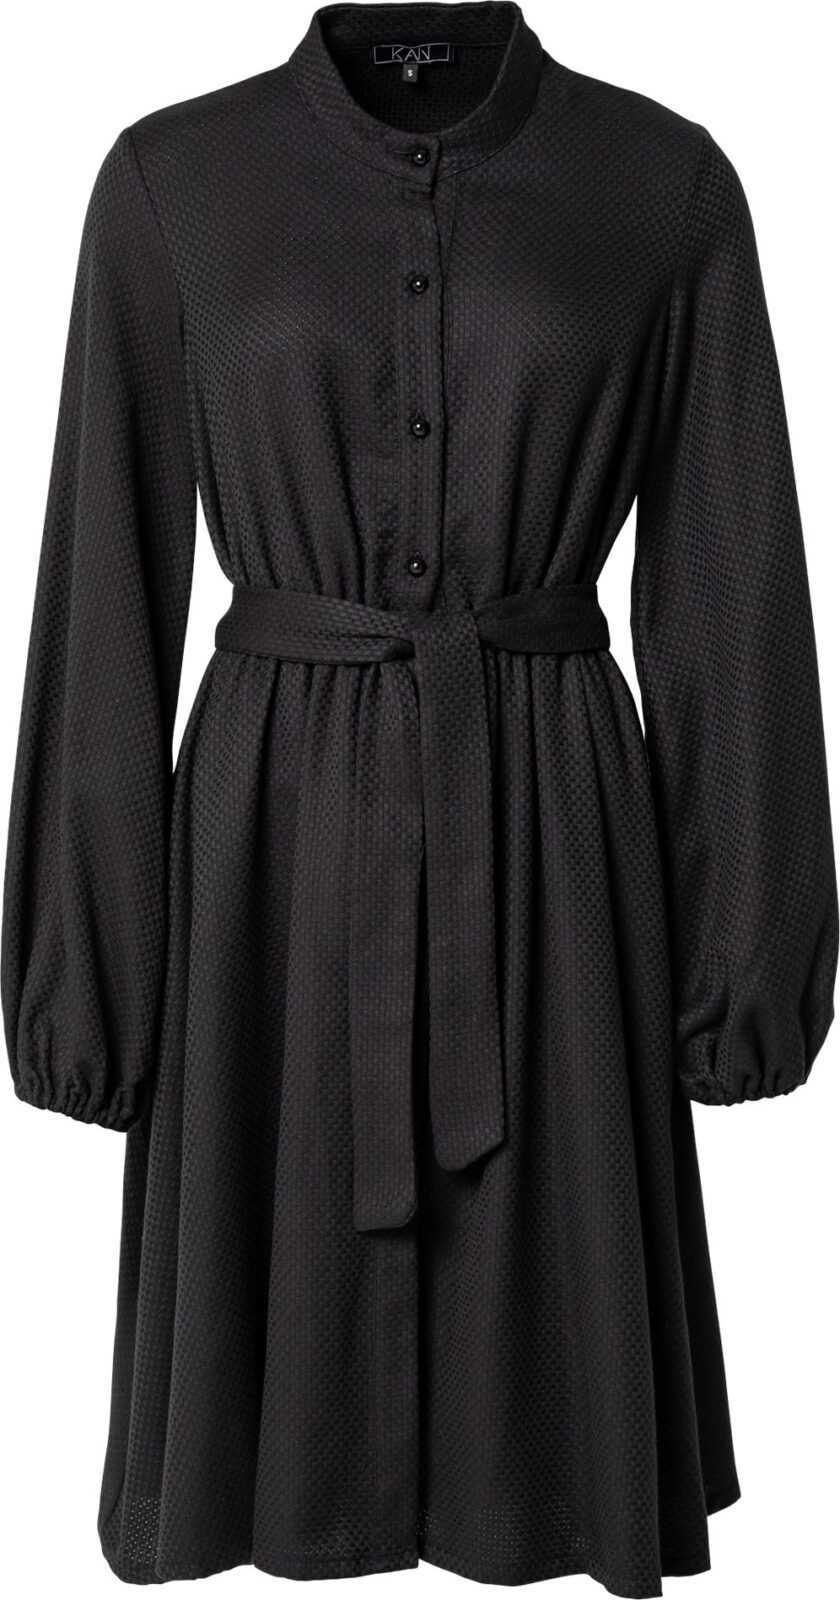 KAN Košilové šaty 'TITANIUM' černá